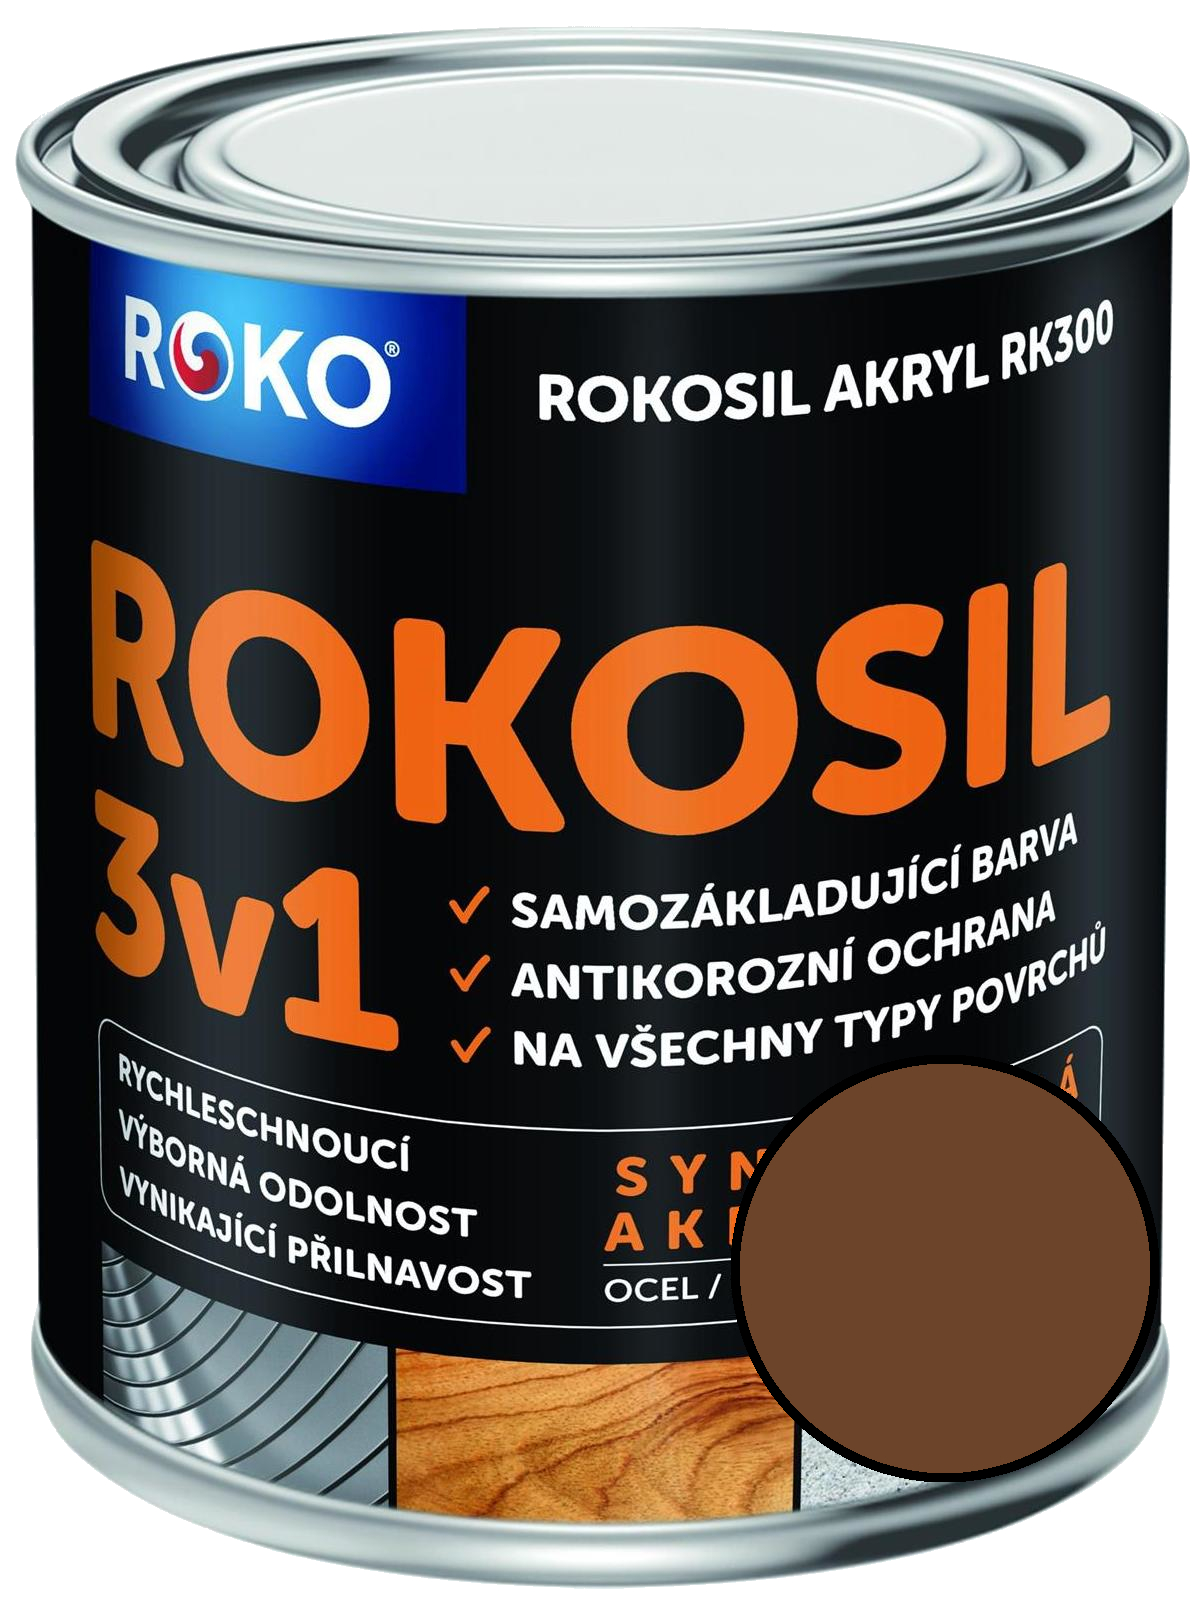 Barva samozákladující Rokosil akryl 3v1 RK 300 2430 hnědá střední